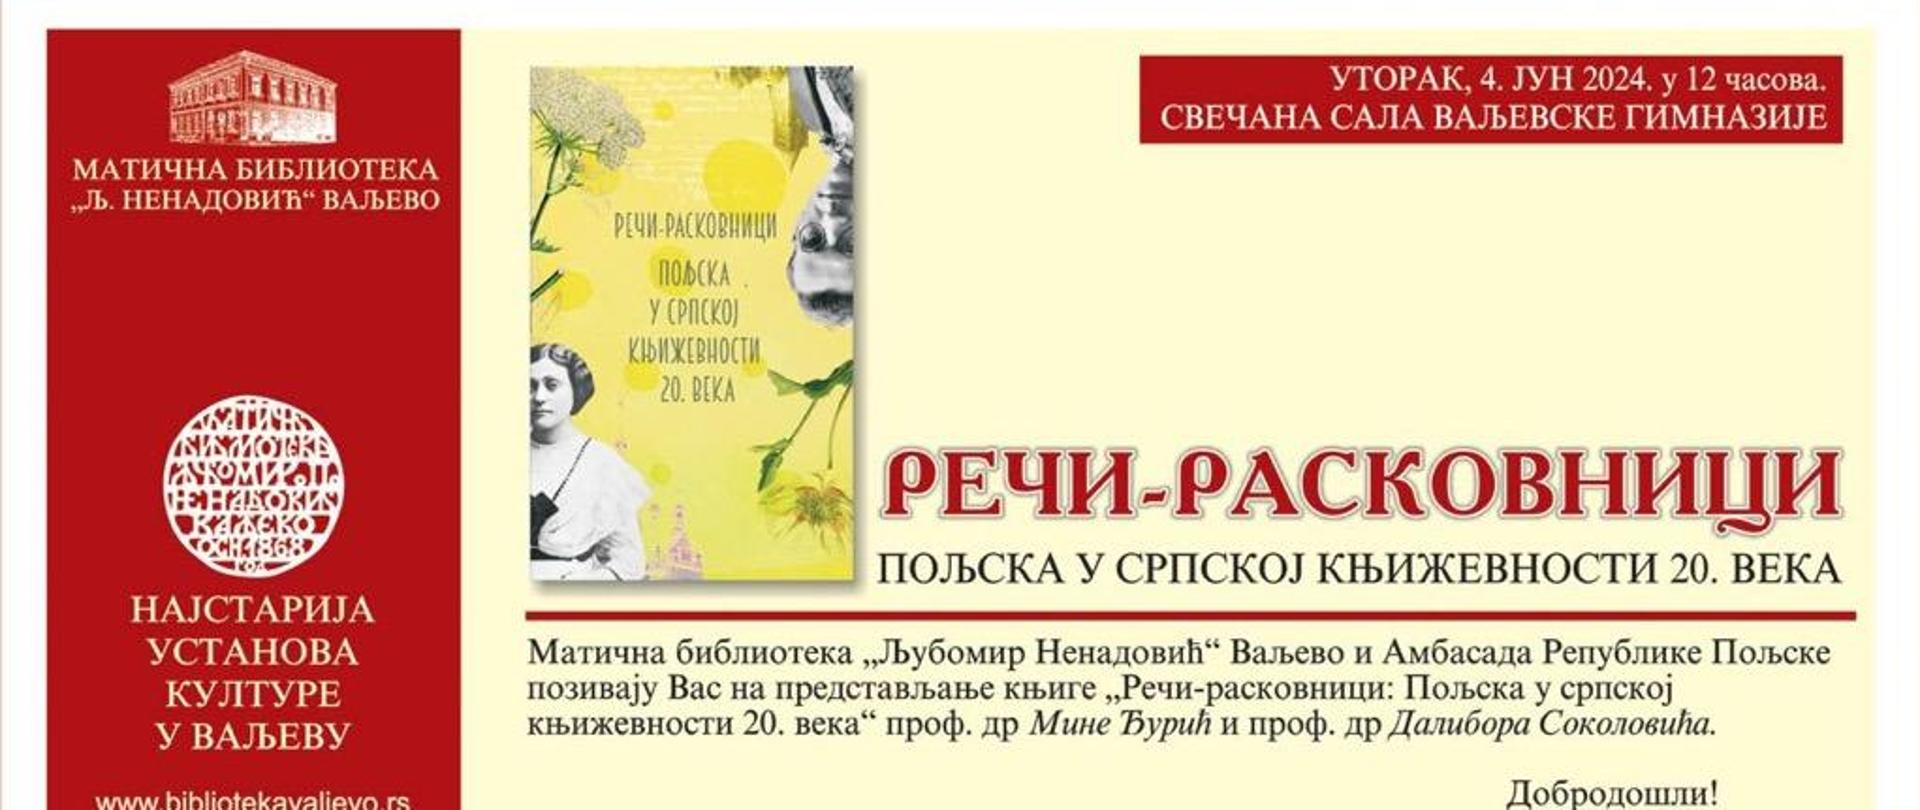 W dni 10.06. br. w Valjevie odbyła się promocja publikacji o polsko-serbskich związkach literackich (Reči - raskovnici. Poljska u srpskoj književnosti 20. veka), która ukazała się w grudniu 2023 r. z inicjatywy placówki. 